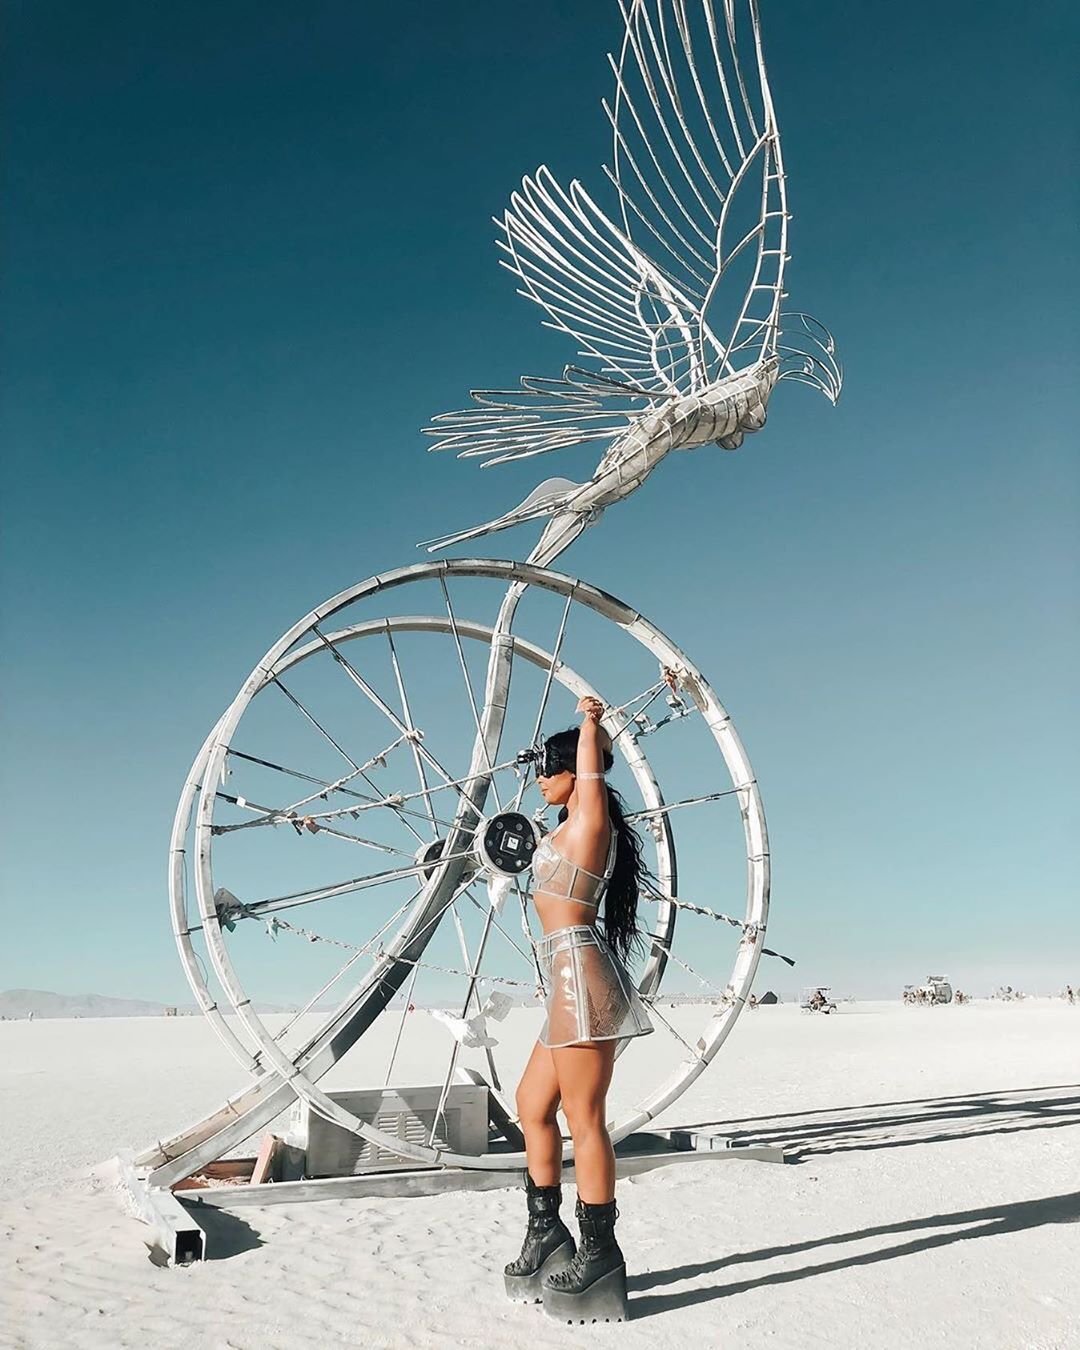 Нереальной красоты скульптуры и голые тела на фестивале Burning Man 2019 - фото 448435